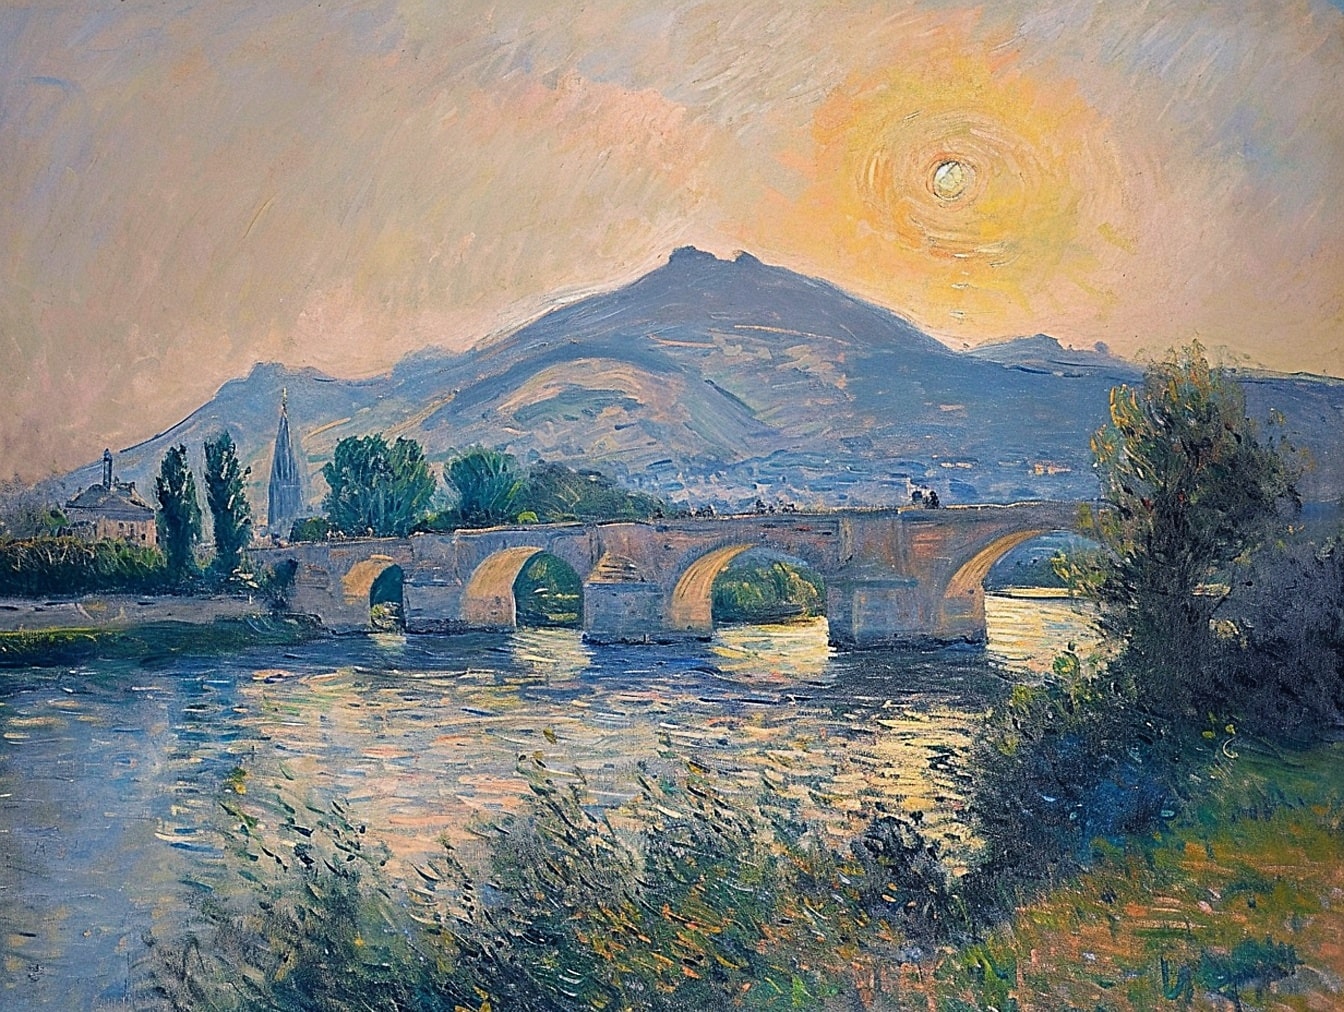 Ulje na platnu starog kamenog mosta preko rijeke sa zalaskom sunca nad brdima u pozadini